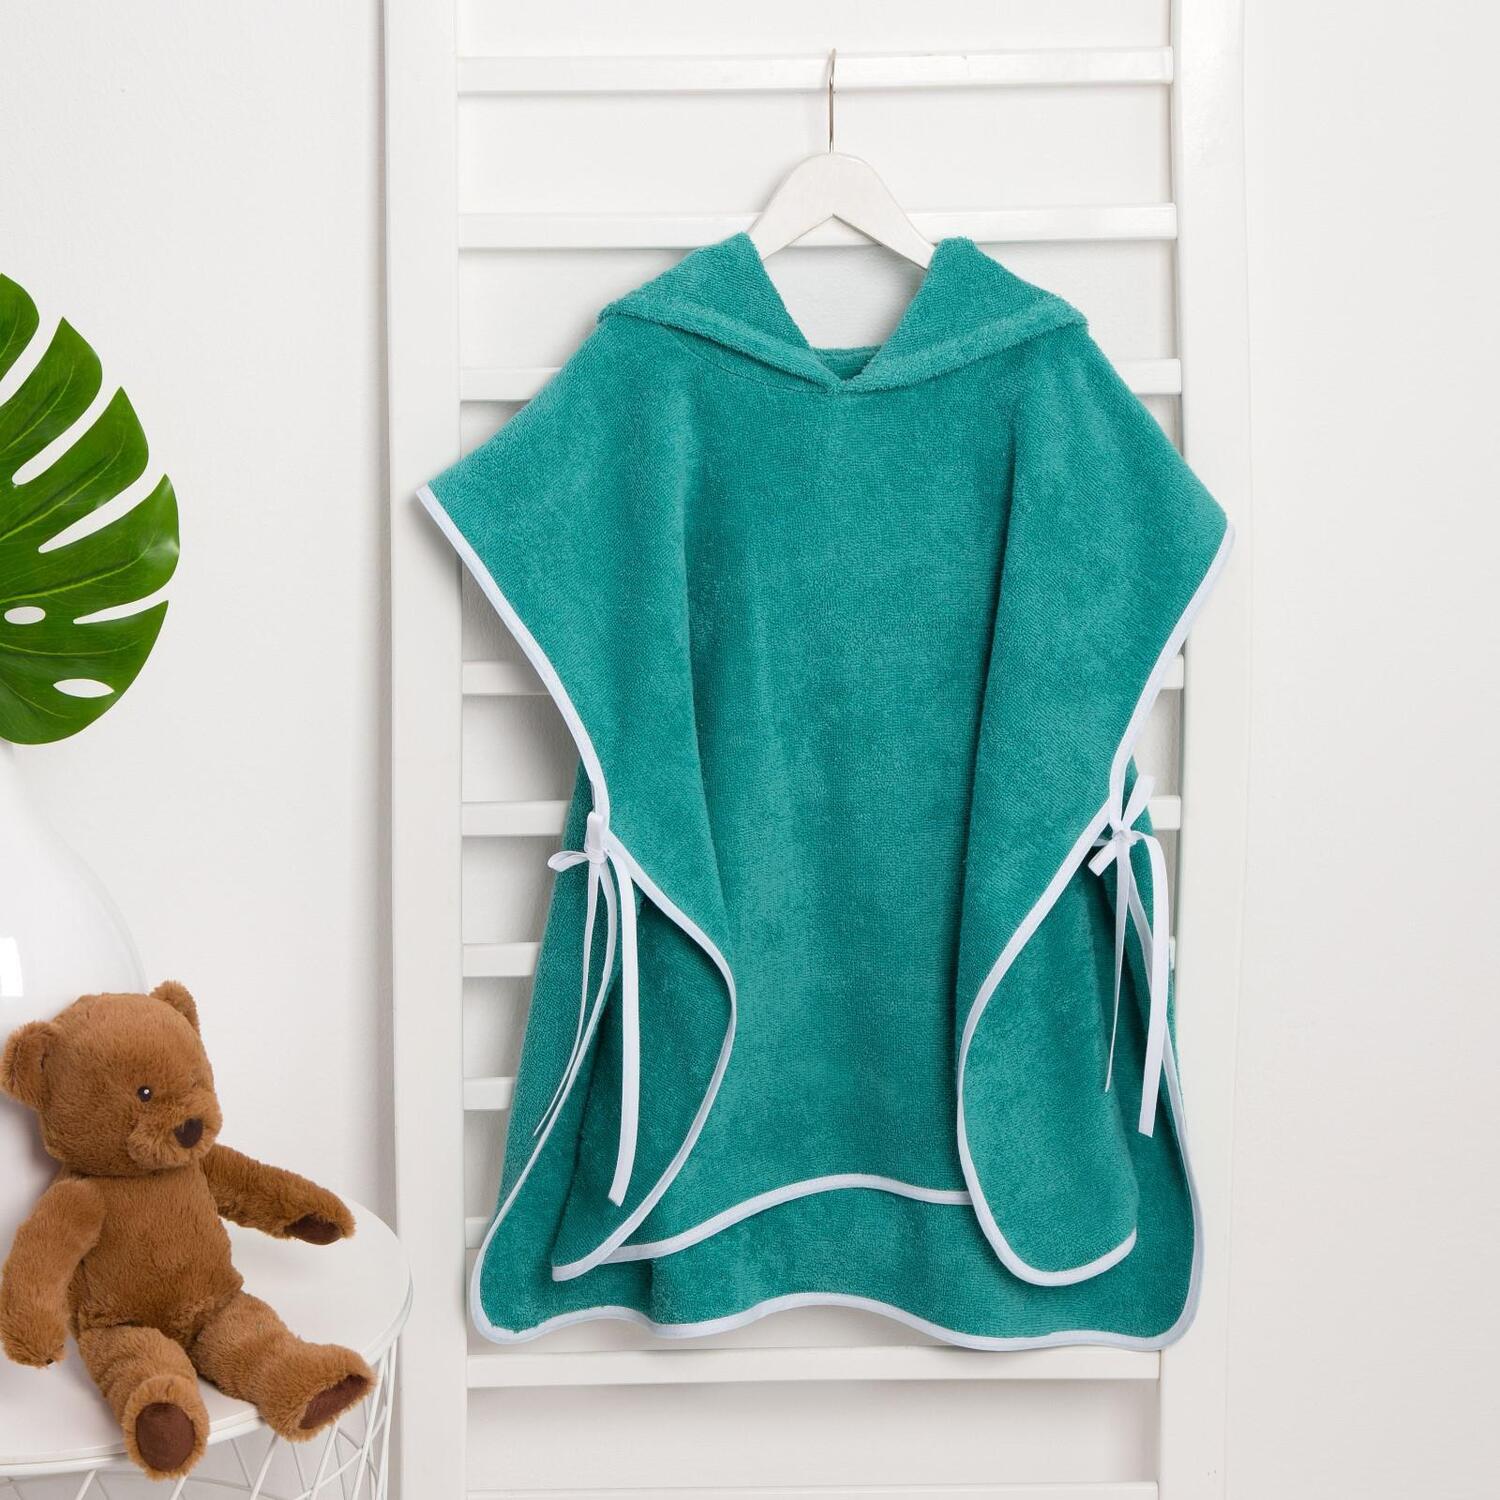 Детское полотенце Гномик цвет: зеленый (58х64 см), размер 58х64 см ros837281 Детское полотенце Гномик цвет: зеленый (58х64 см) - фото 1